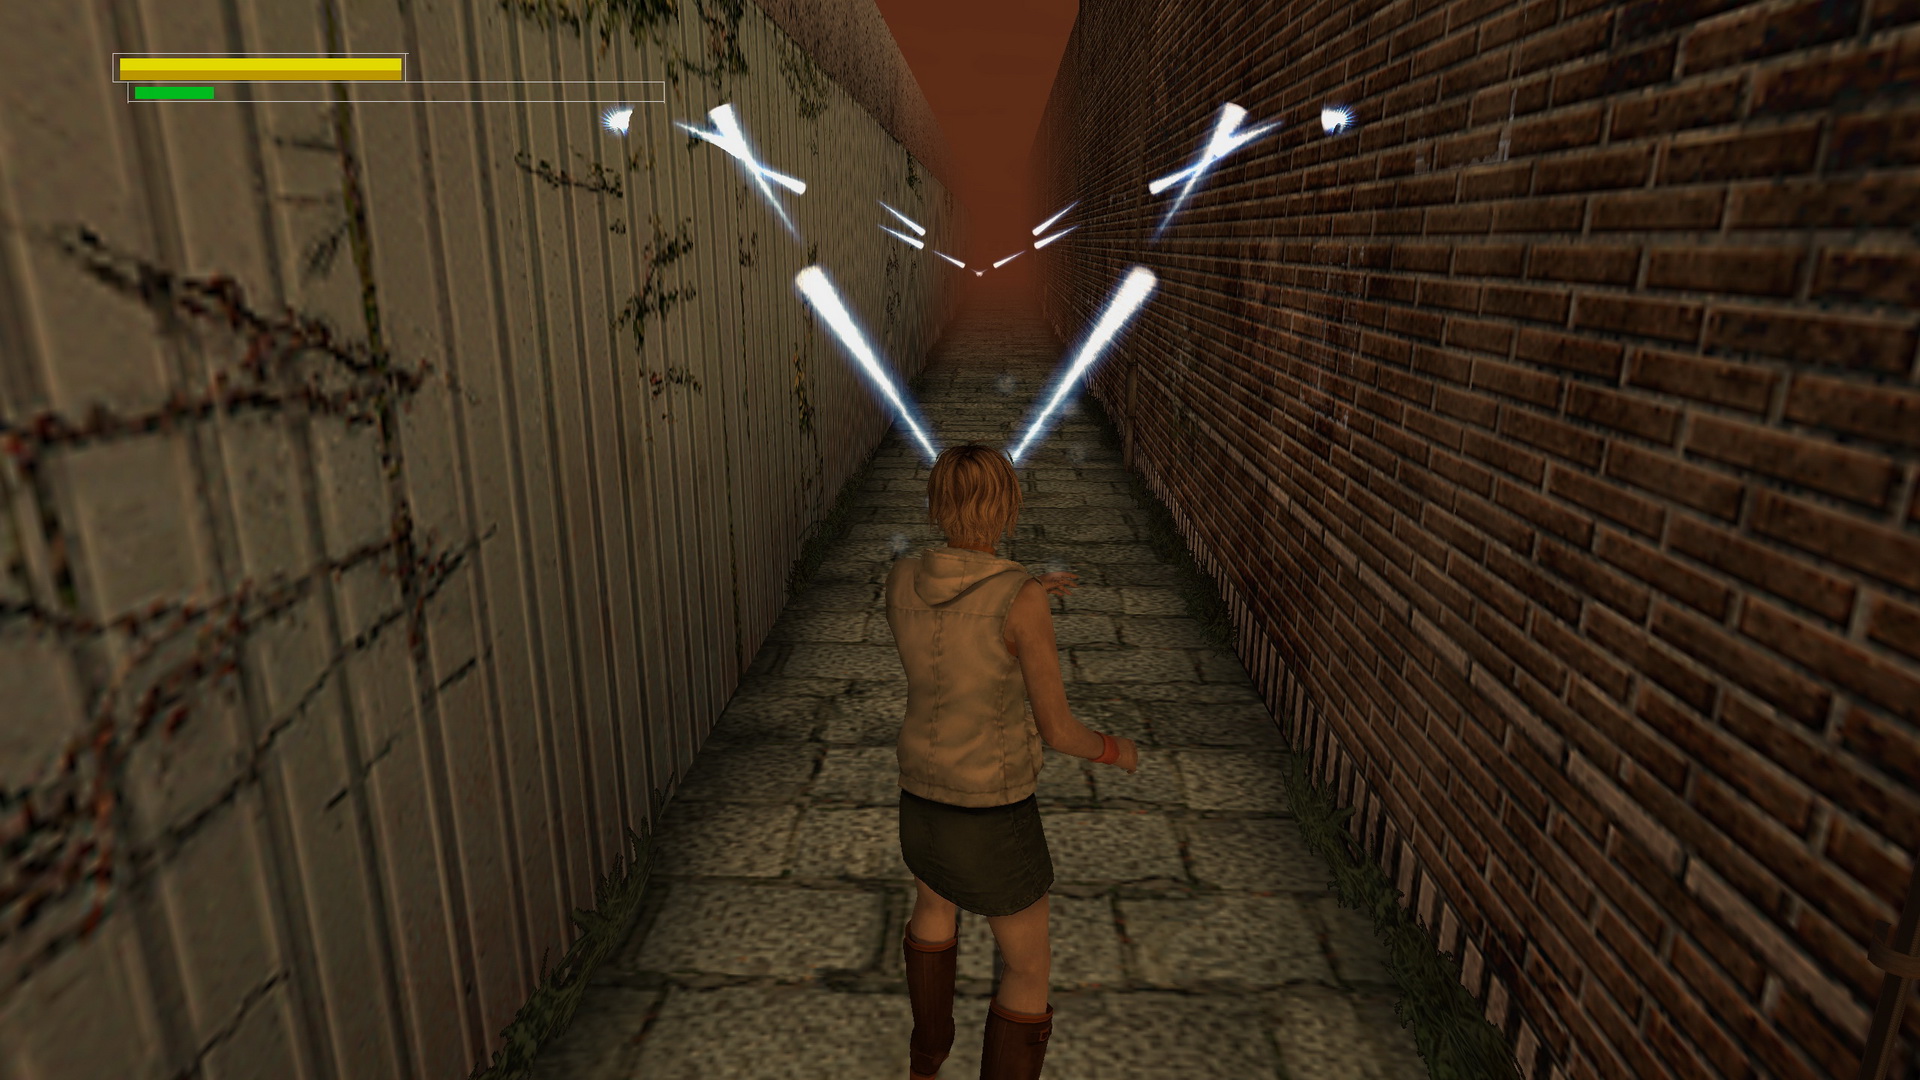 Silent Hill 3 - Final Boss THE GOD / NORMAL ENDING - Walkthrough Part 10  (HARD) 